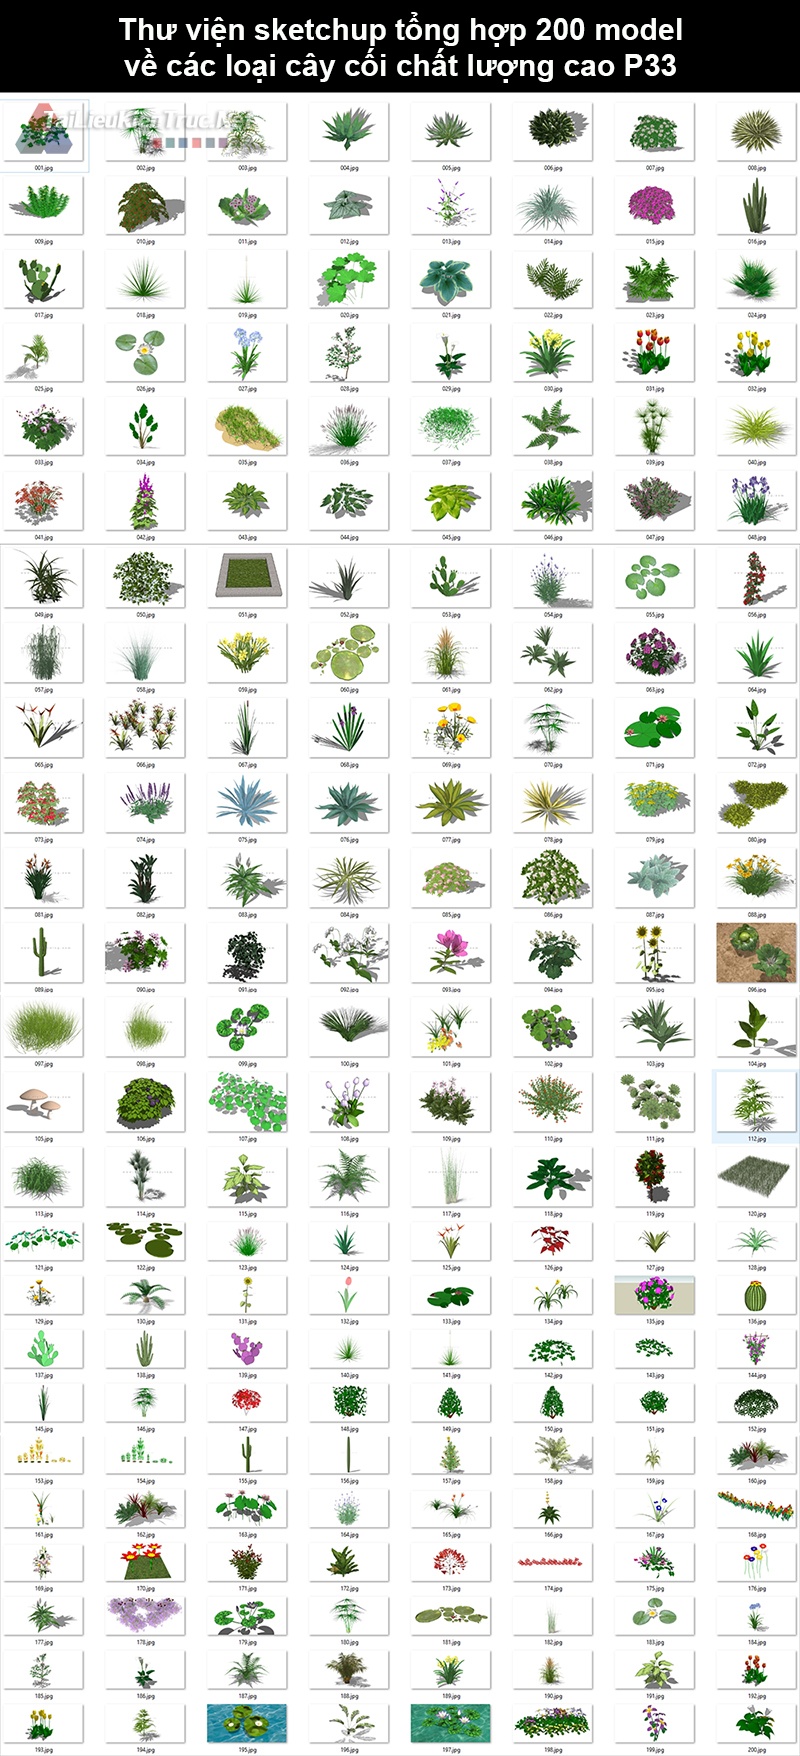 Thư viện Sketchup tổng hợp 200 Model về các loại cây cối chất lượng cao P33